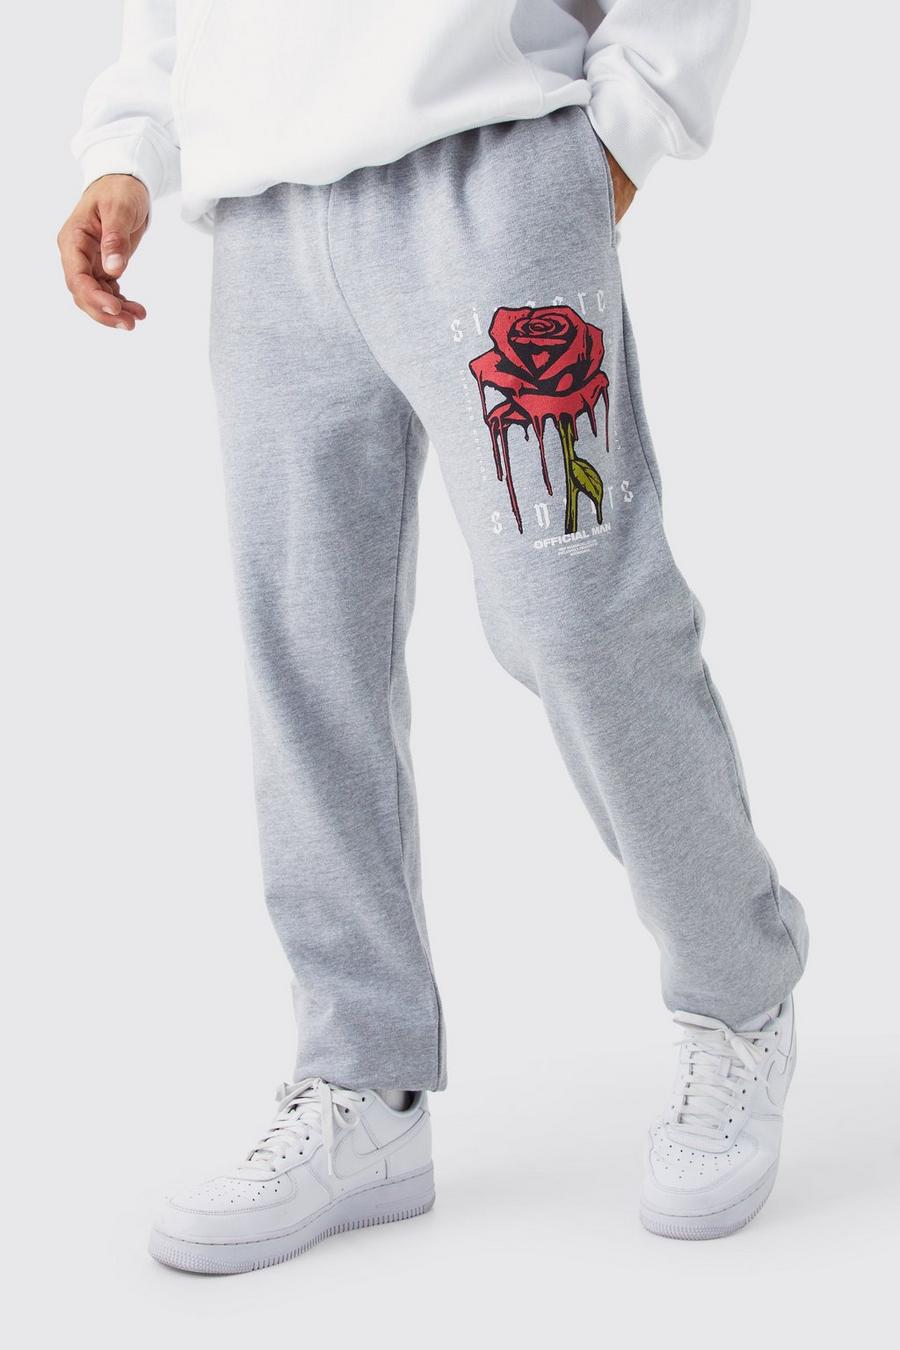 Pantaloni tuta con grafica di rose e gocce, Grey marl